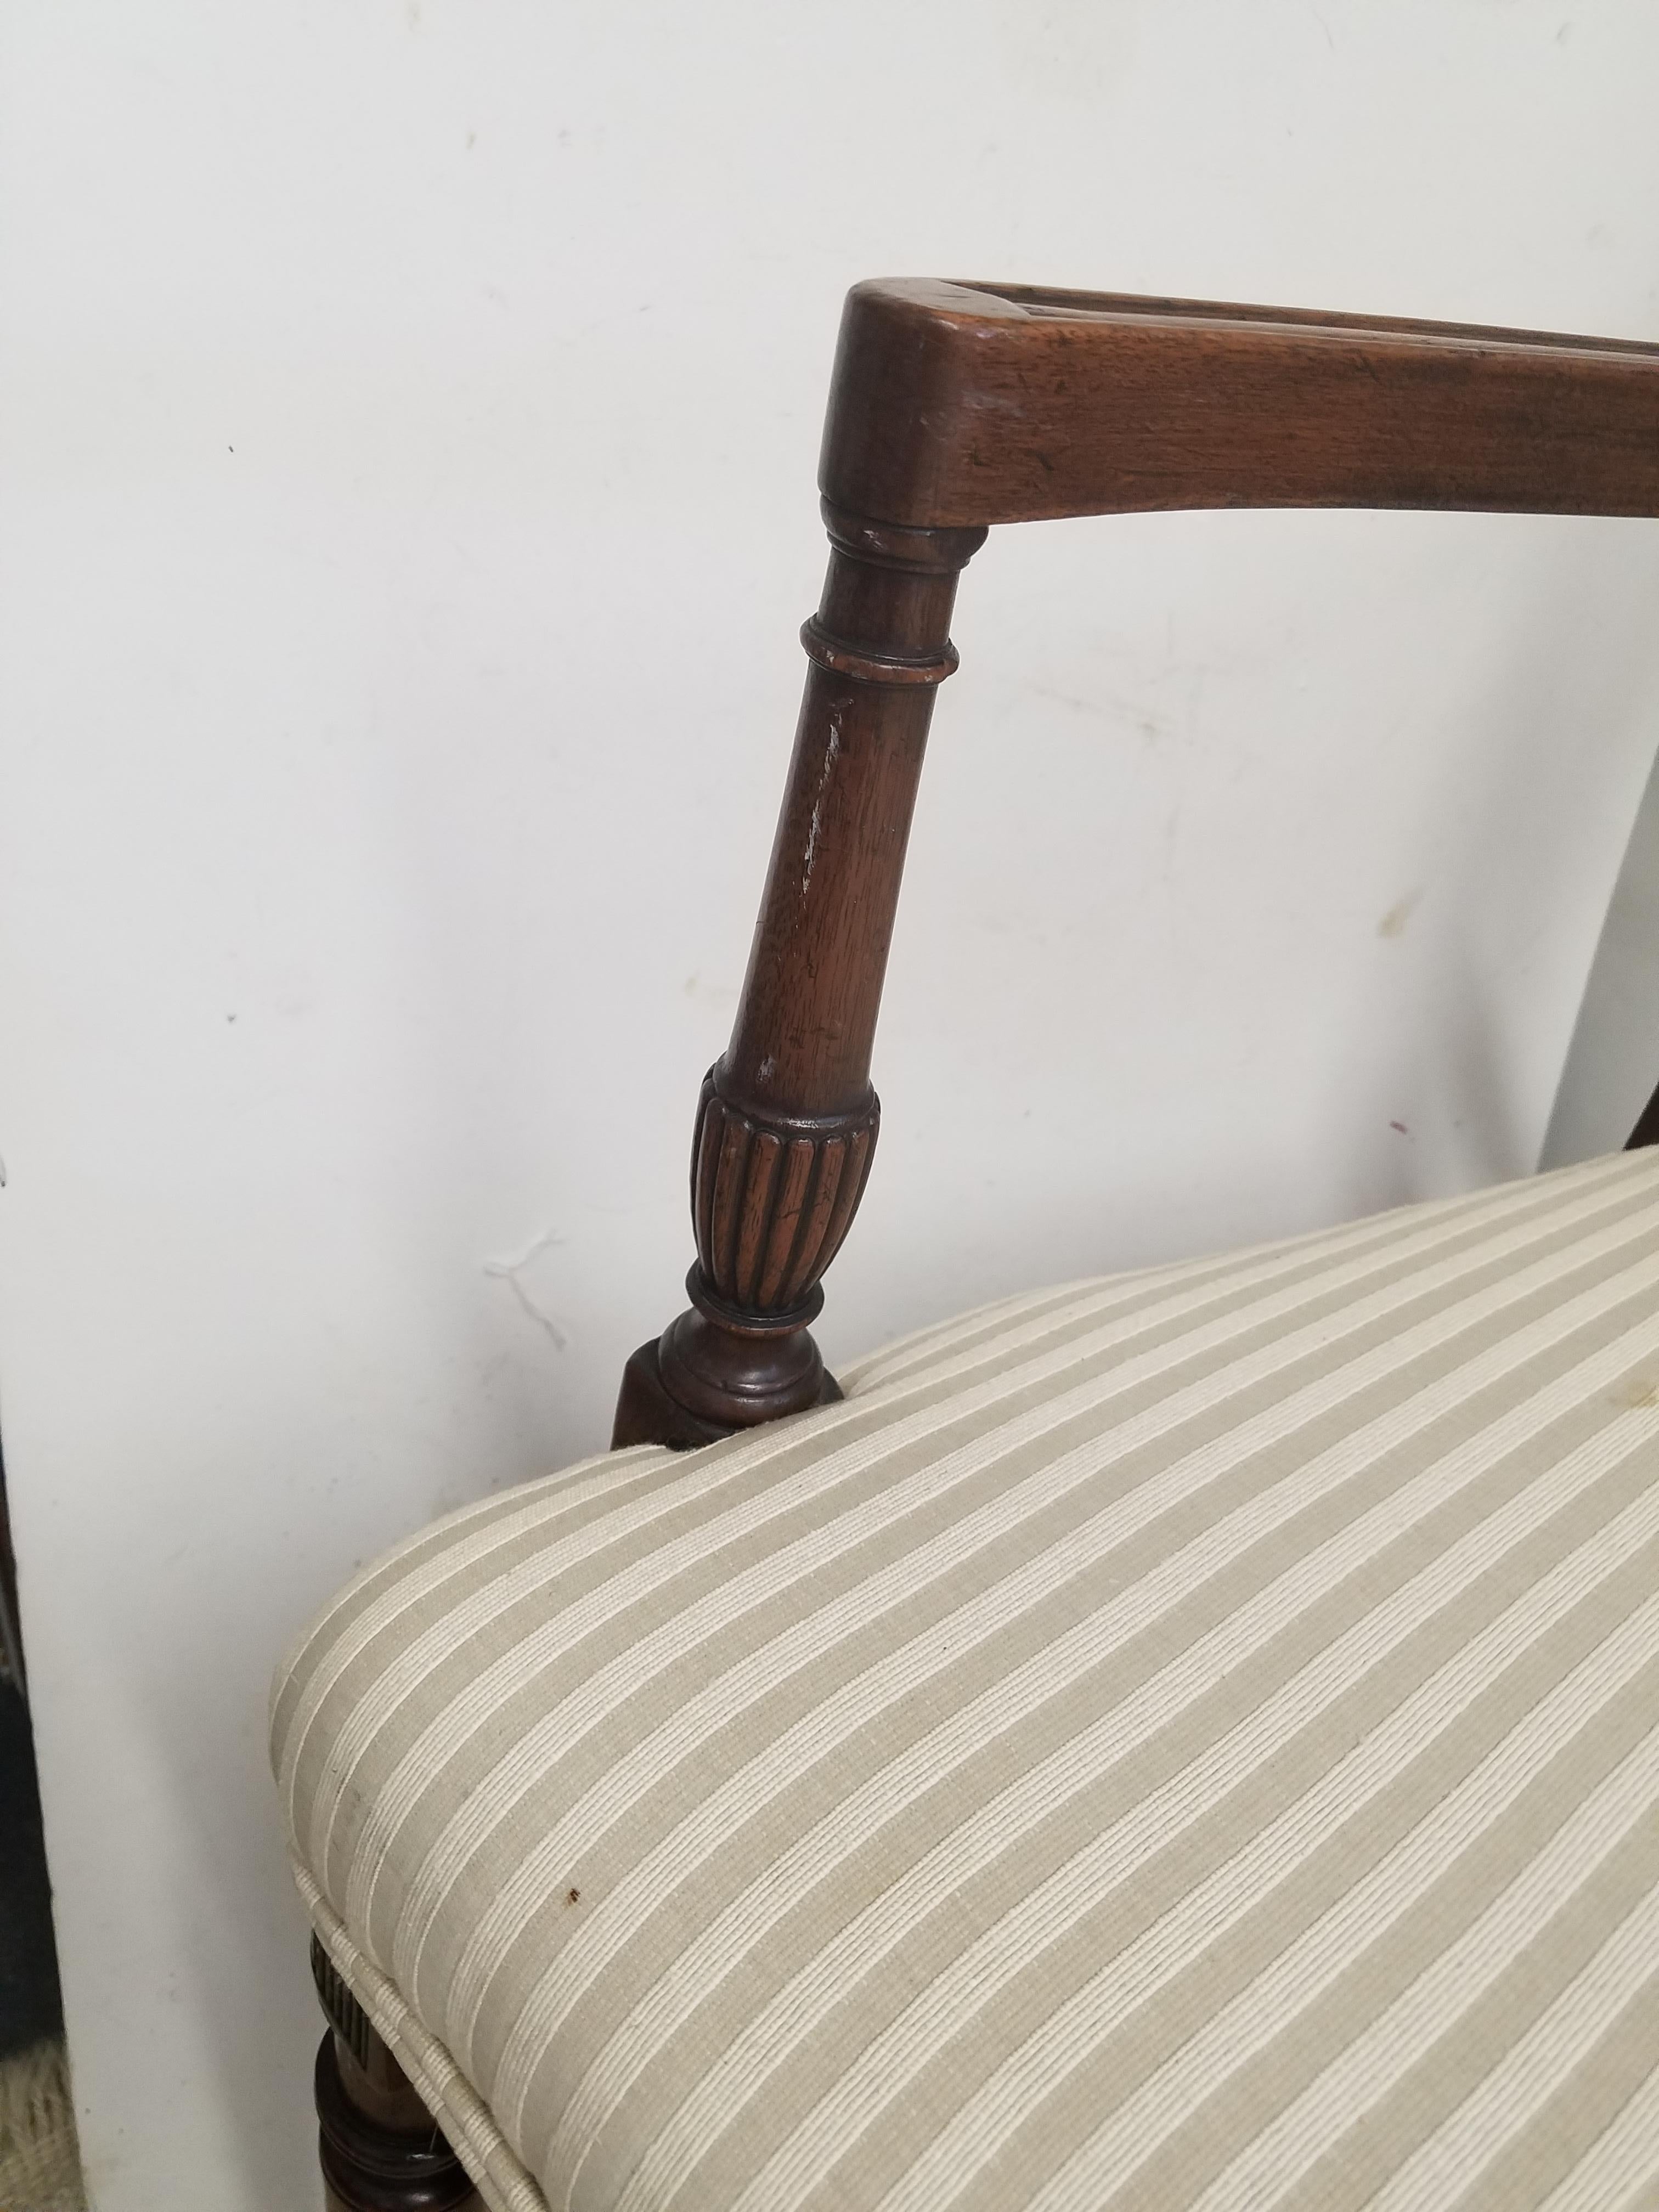 Maße: 55,5 B x 23,5 T x 34 H Sitzhöhe 18
Wunderschönes, hochwertiges Sofa im Regency-Stil aus der Mitte des 20. Jahrhunderts, gepolstert mit einem elfenbeinfarbenen Streifenstoff. Der Rücken mit einer dreifachen Stuhlform mit eleganten Details.